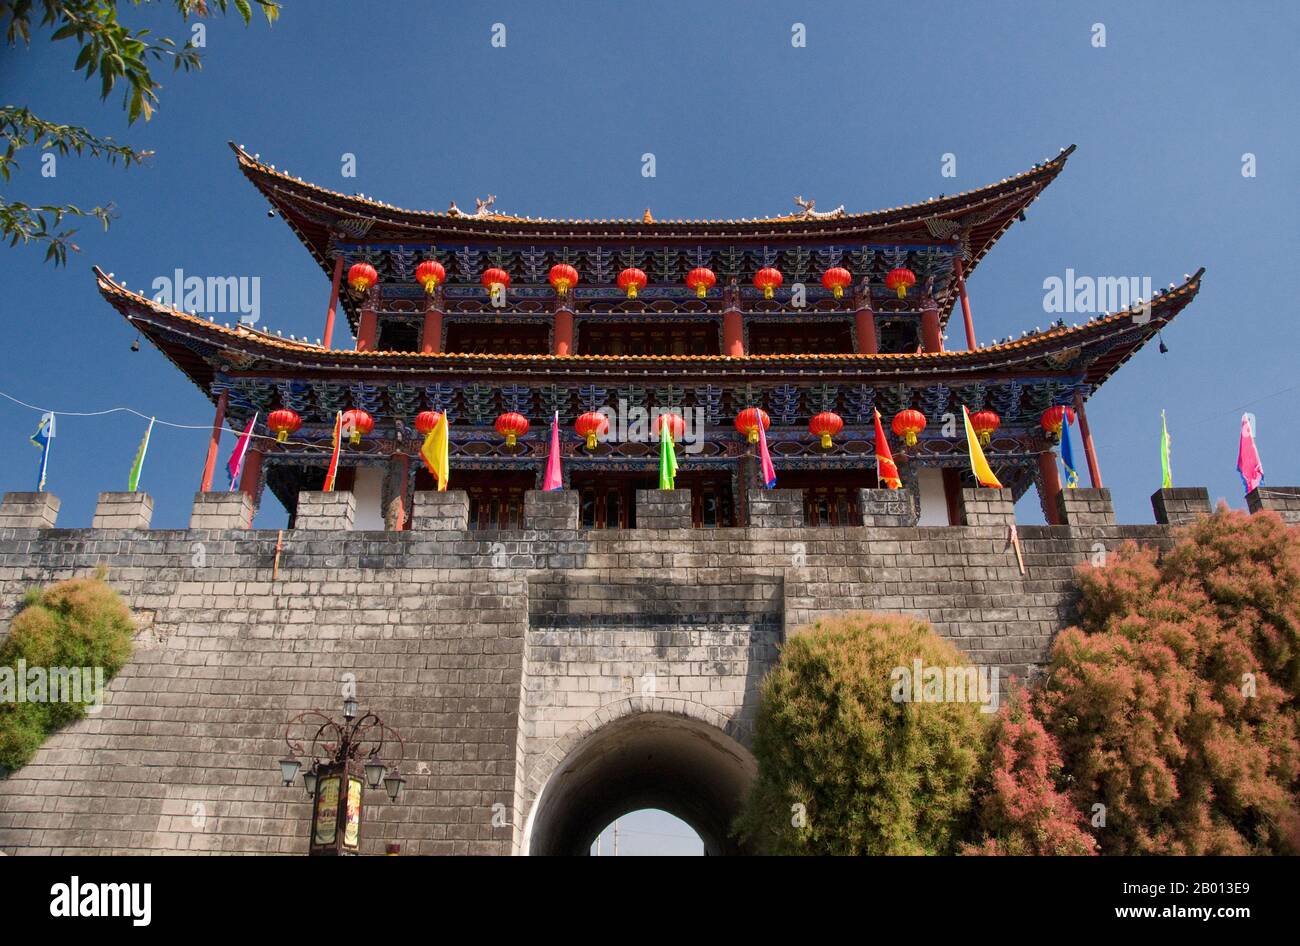 China: Anyuanmen (Nordtor), Old Dali, Dali, Yunnan. Dali ist die alte Hauptstadt sowohl des Bai-Königreichs Nanzhao, das im 8. Und 9. Jahrhundert in der Region blühte, als auch des Königreichs Dali, das von 937 bis 1253 regierte. Dali liegt in einem einst bedeutenden muslimischen Teil Südchinas und war von 1856 bis 1863 auch das Zentrum der Panthay-Rebellion gegen die regierende imperiale Qing-Dynastie. Die alte Stadt wurde während der Herrschaft des Ming-Dynastie-Imperators Hongwu (1368–1398) erbaut. Stockfoto